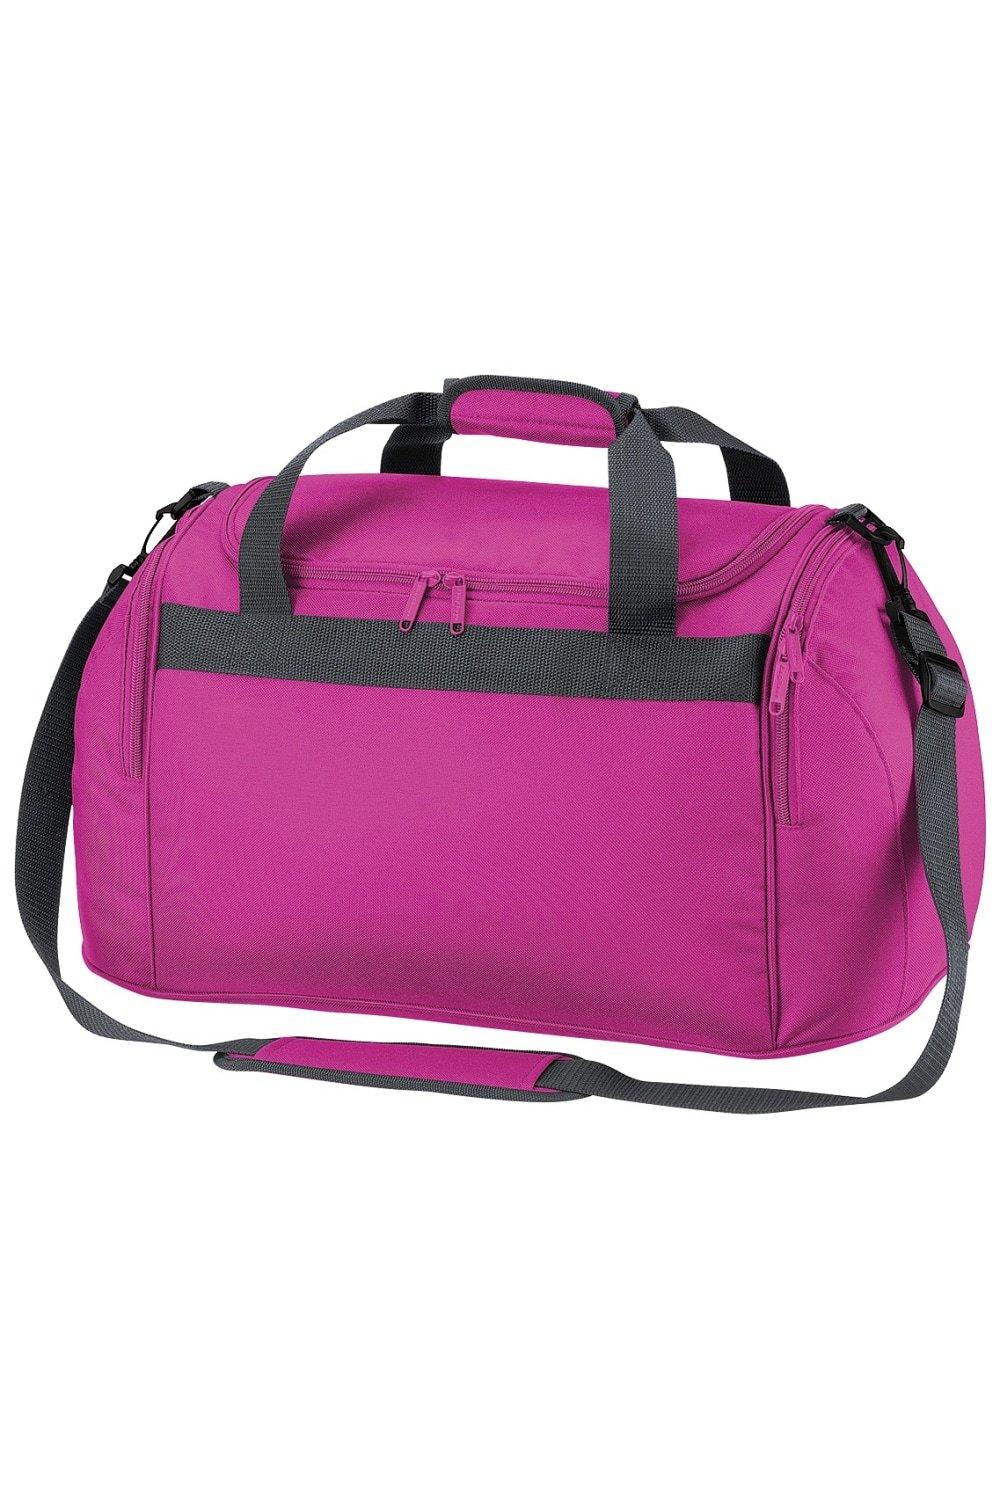 Дорожная сумка для фристайла/спортивная сумка (26 литров) Bagbase, розовый пакет котики большой 38 5 x 28 x 15 см